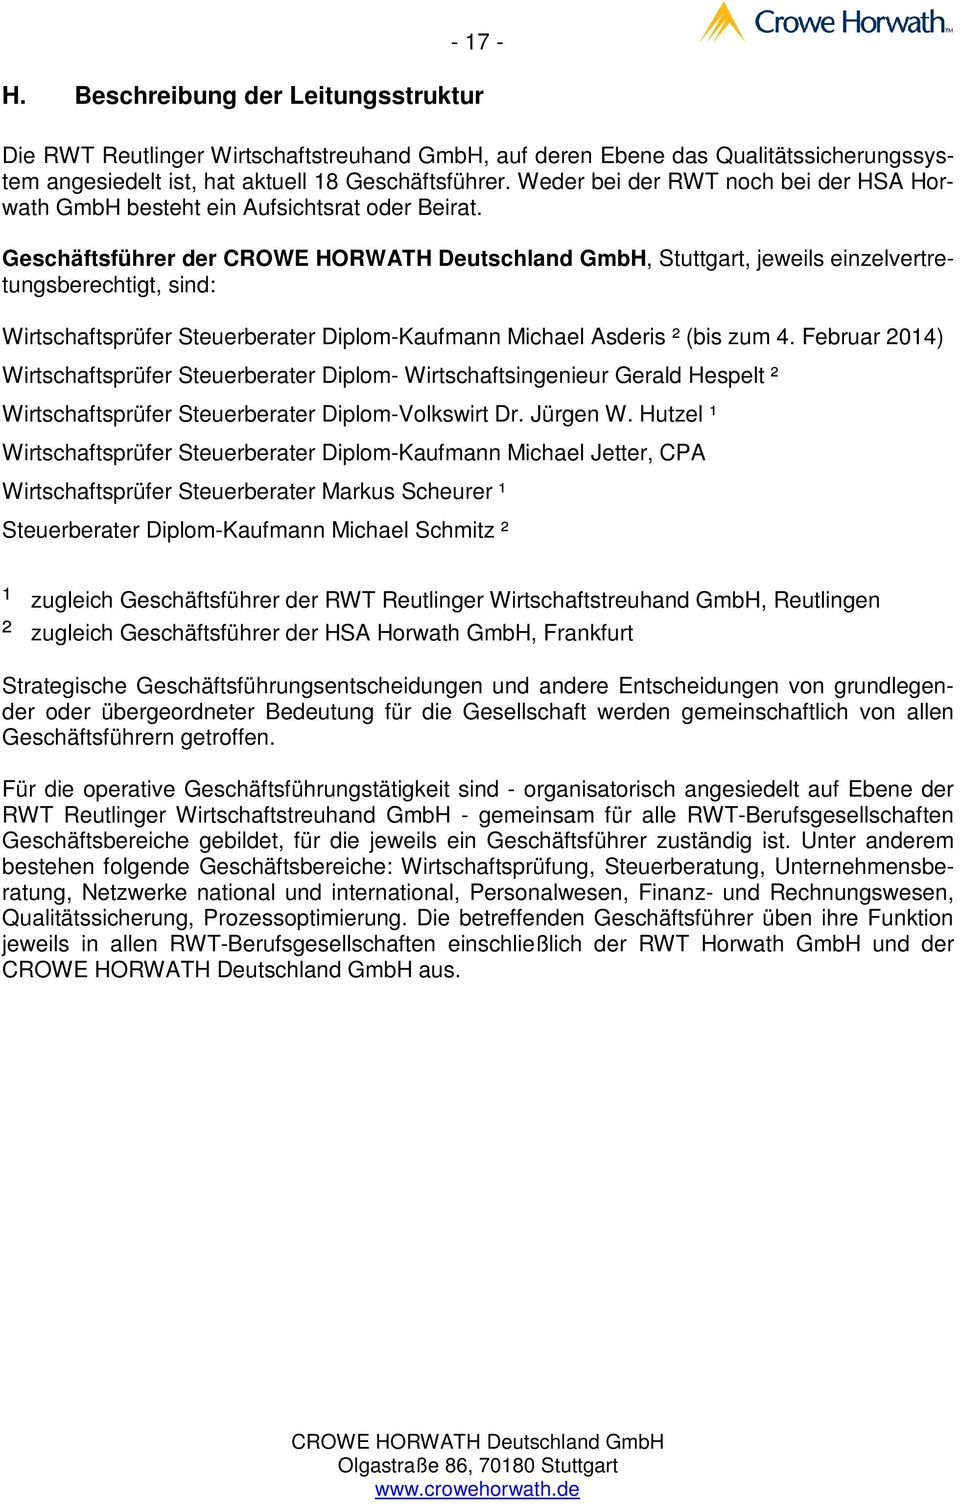 Geschäftsführer der, Stuttgart, jeweils einzelvertretungsberechtigt, sind: Wirtschaftsprüfer Steuerberater Diplom-Kaufmann Michael Asderis ² (bis zum 4.